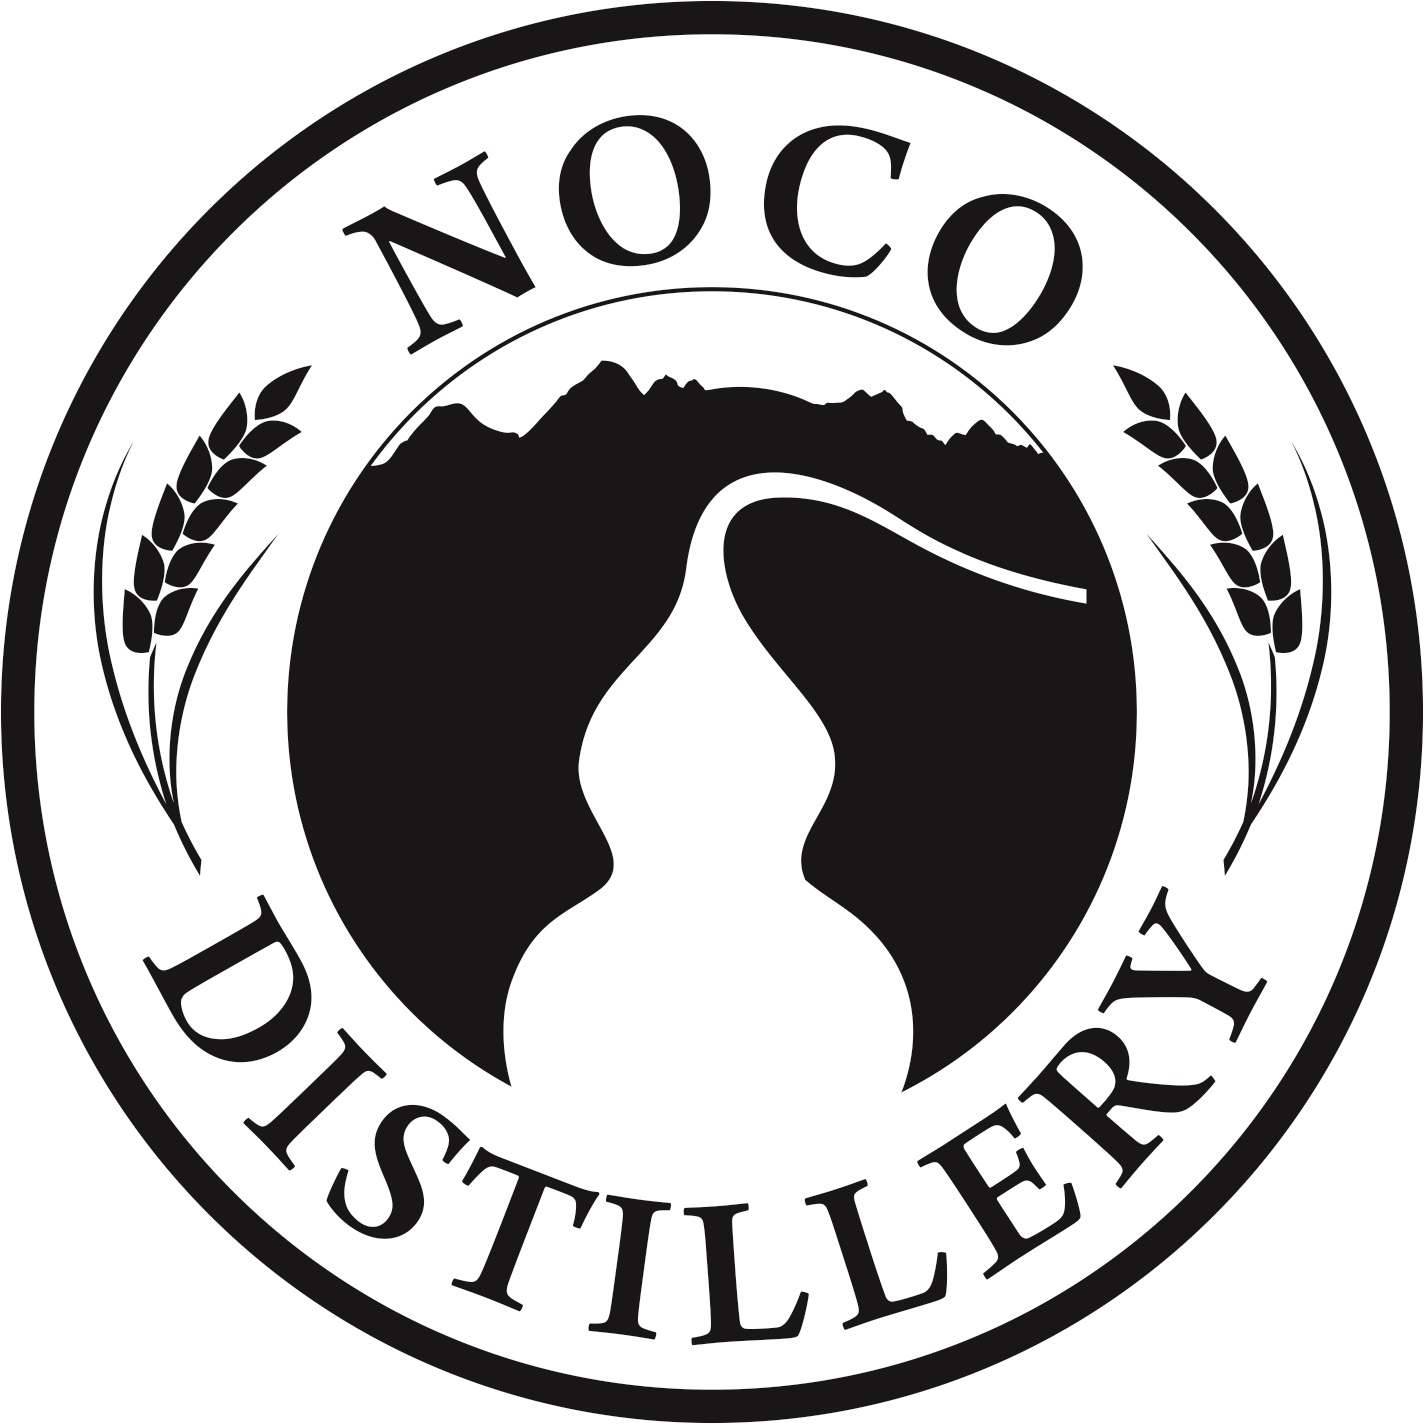 Noco Distillery Colorado Premium Craft Spirits